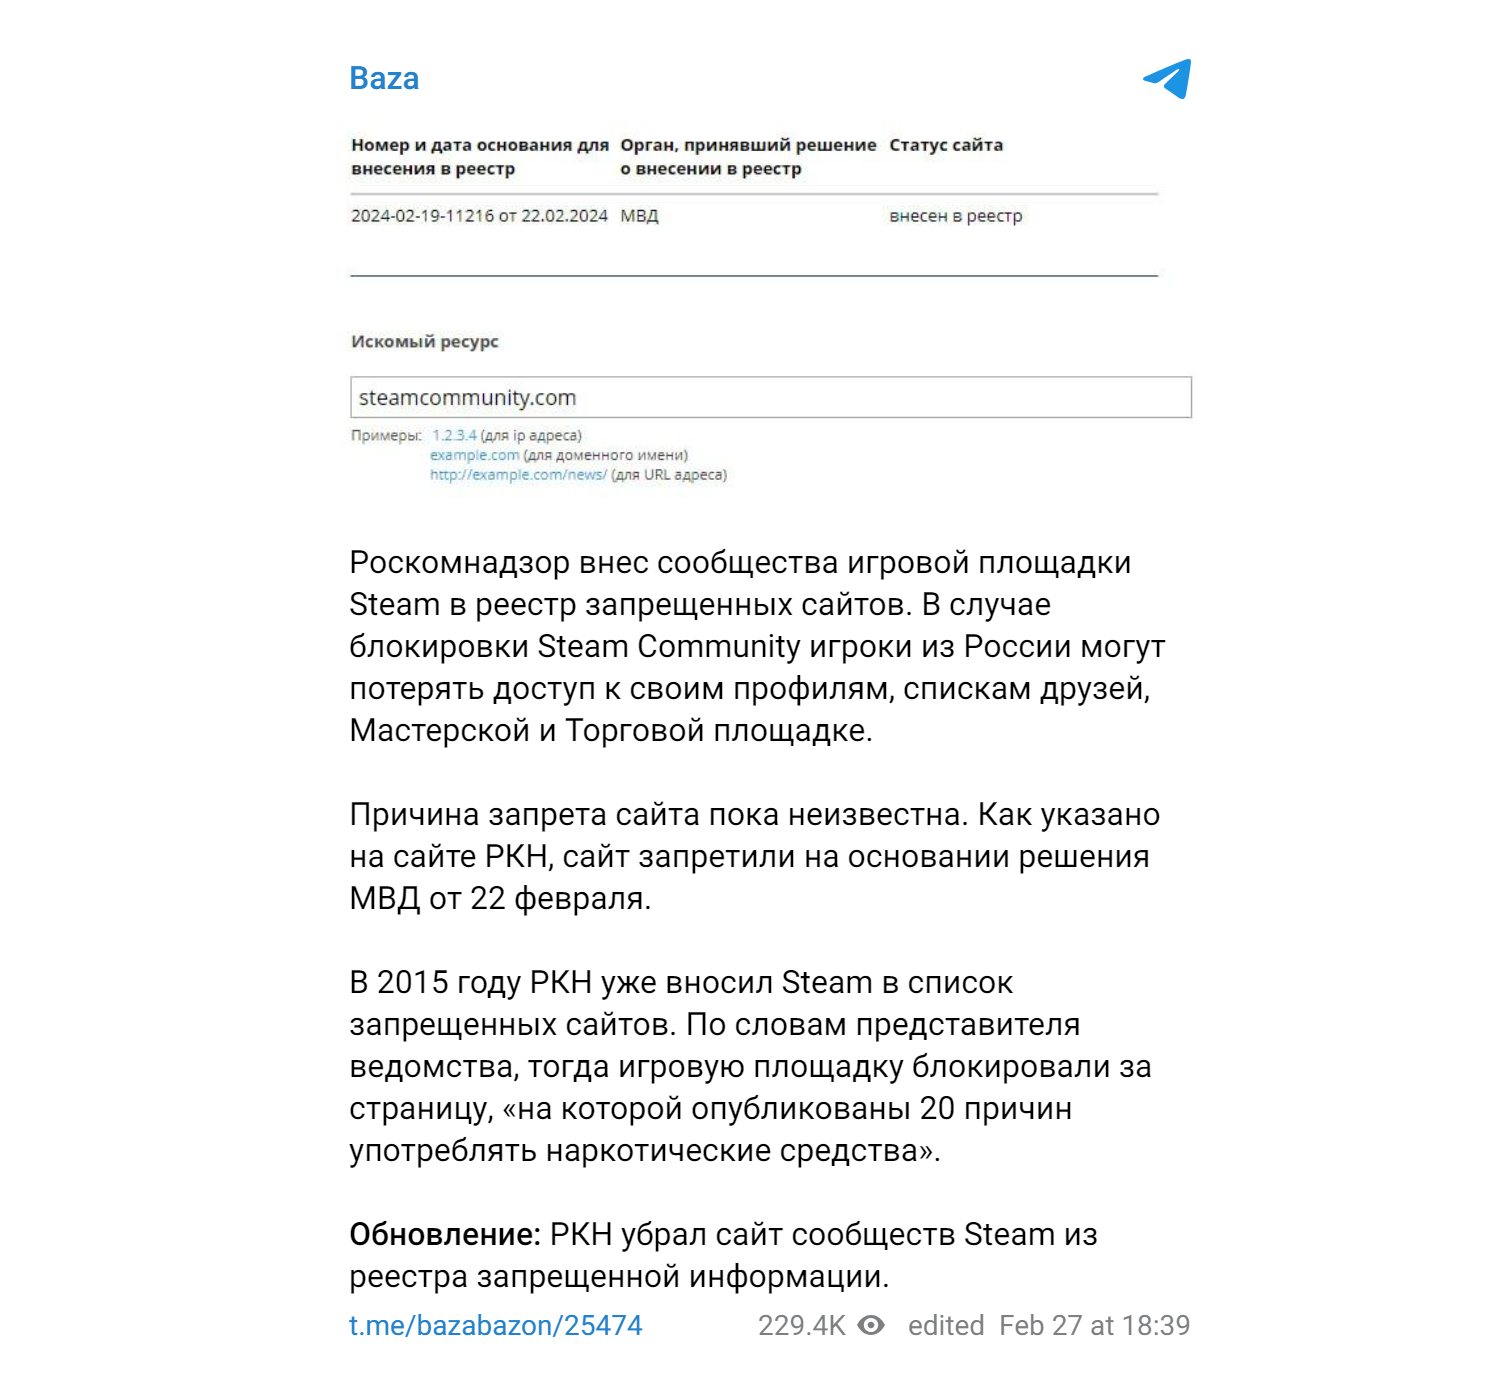 Baza дополнило публикацию в «Телеграме» указанием об удалении сайта из реестра. Источник: телеграм-канал Baza